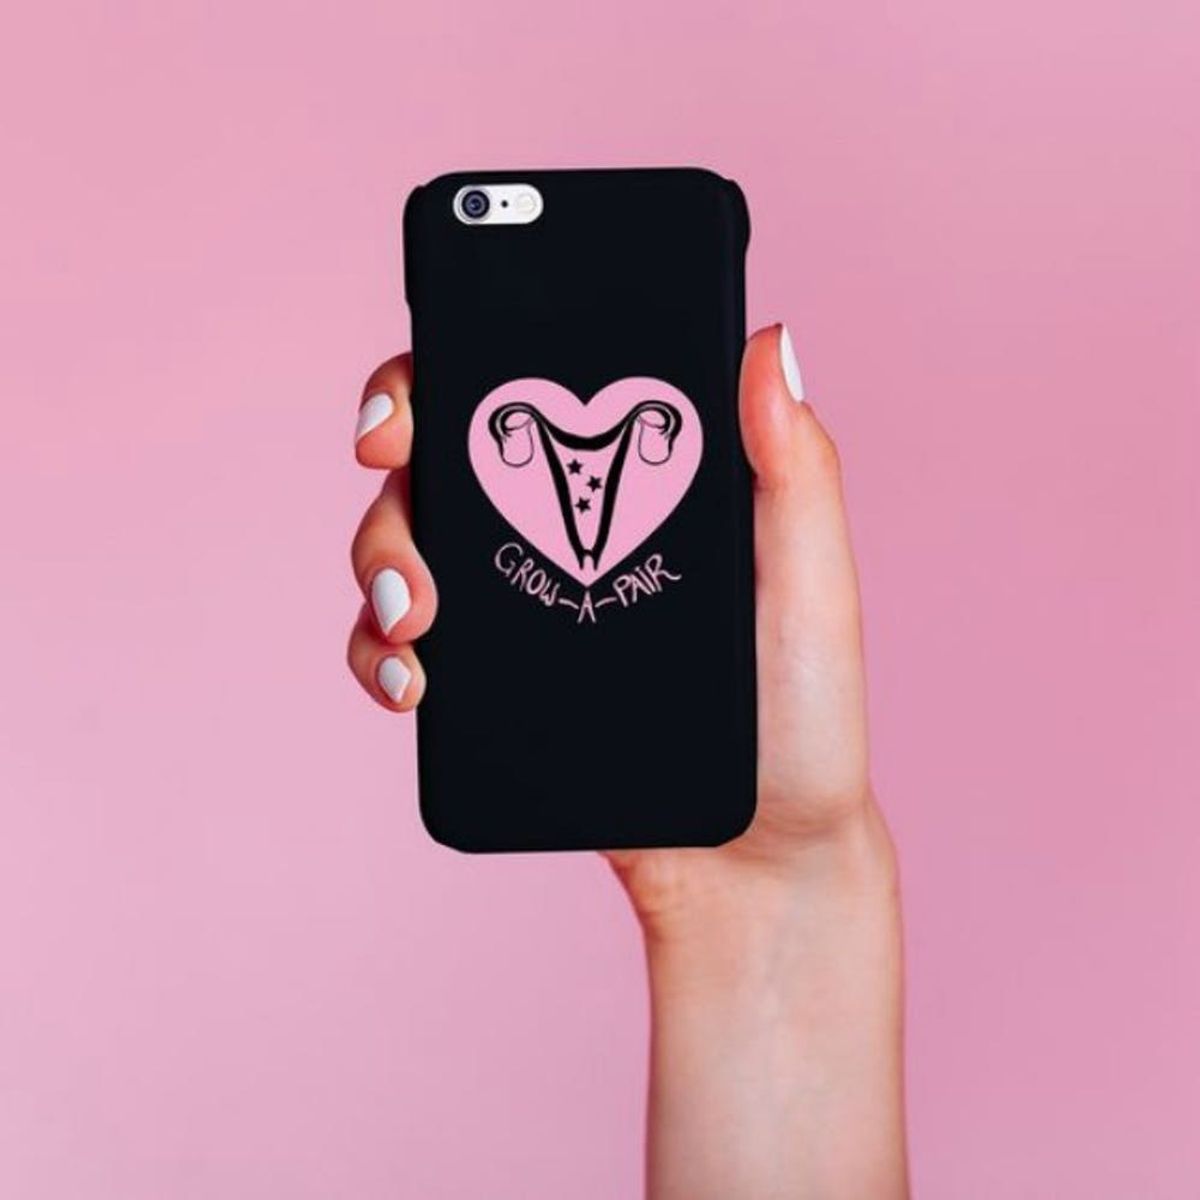 11 #Girlboss iPhone Cases to Make Your Inner Feminist Proud